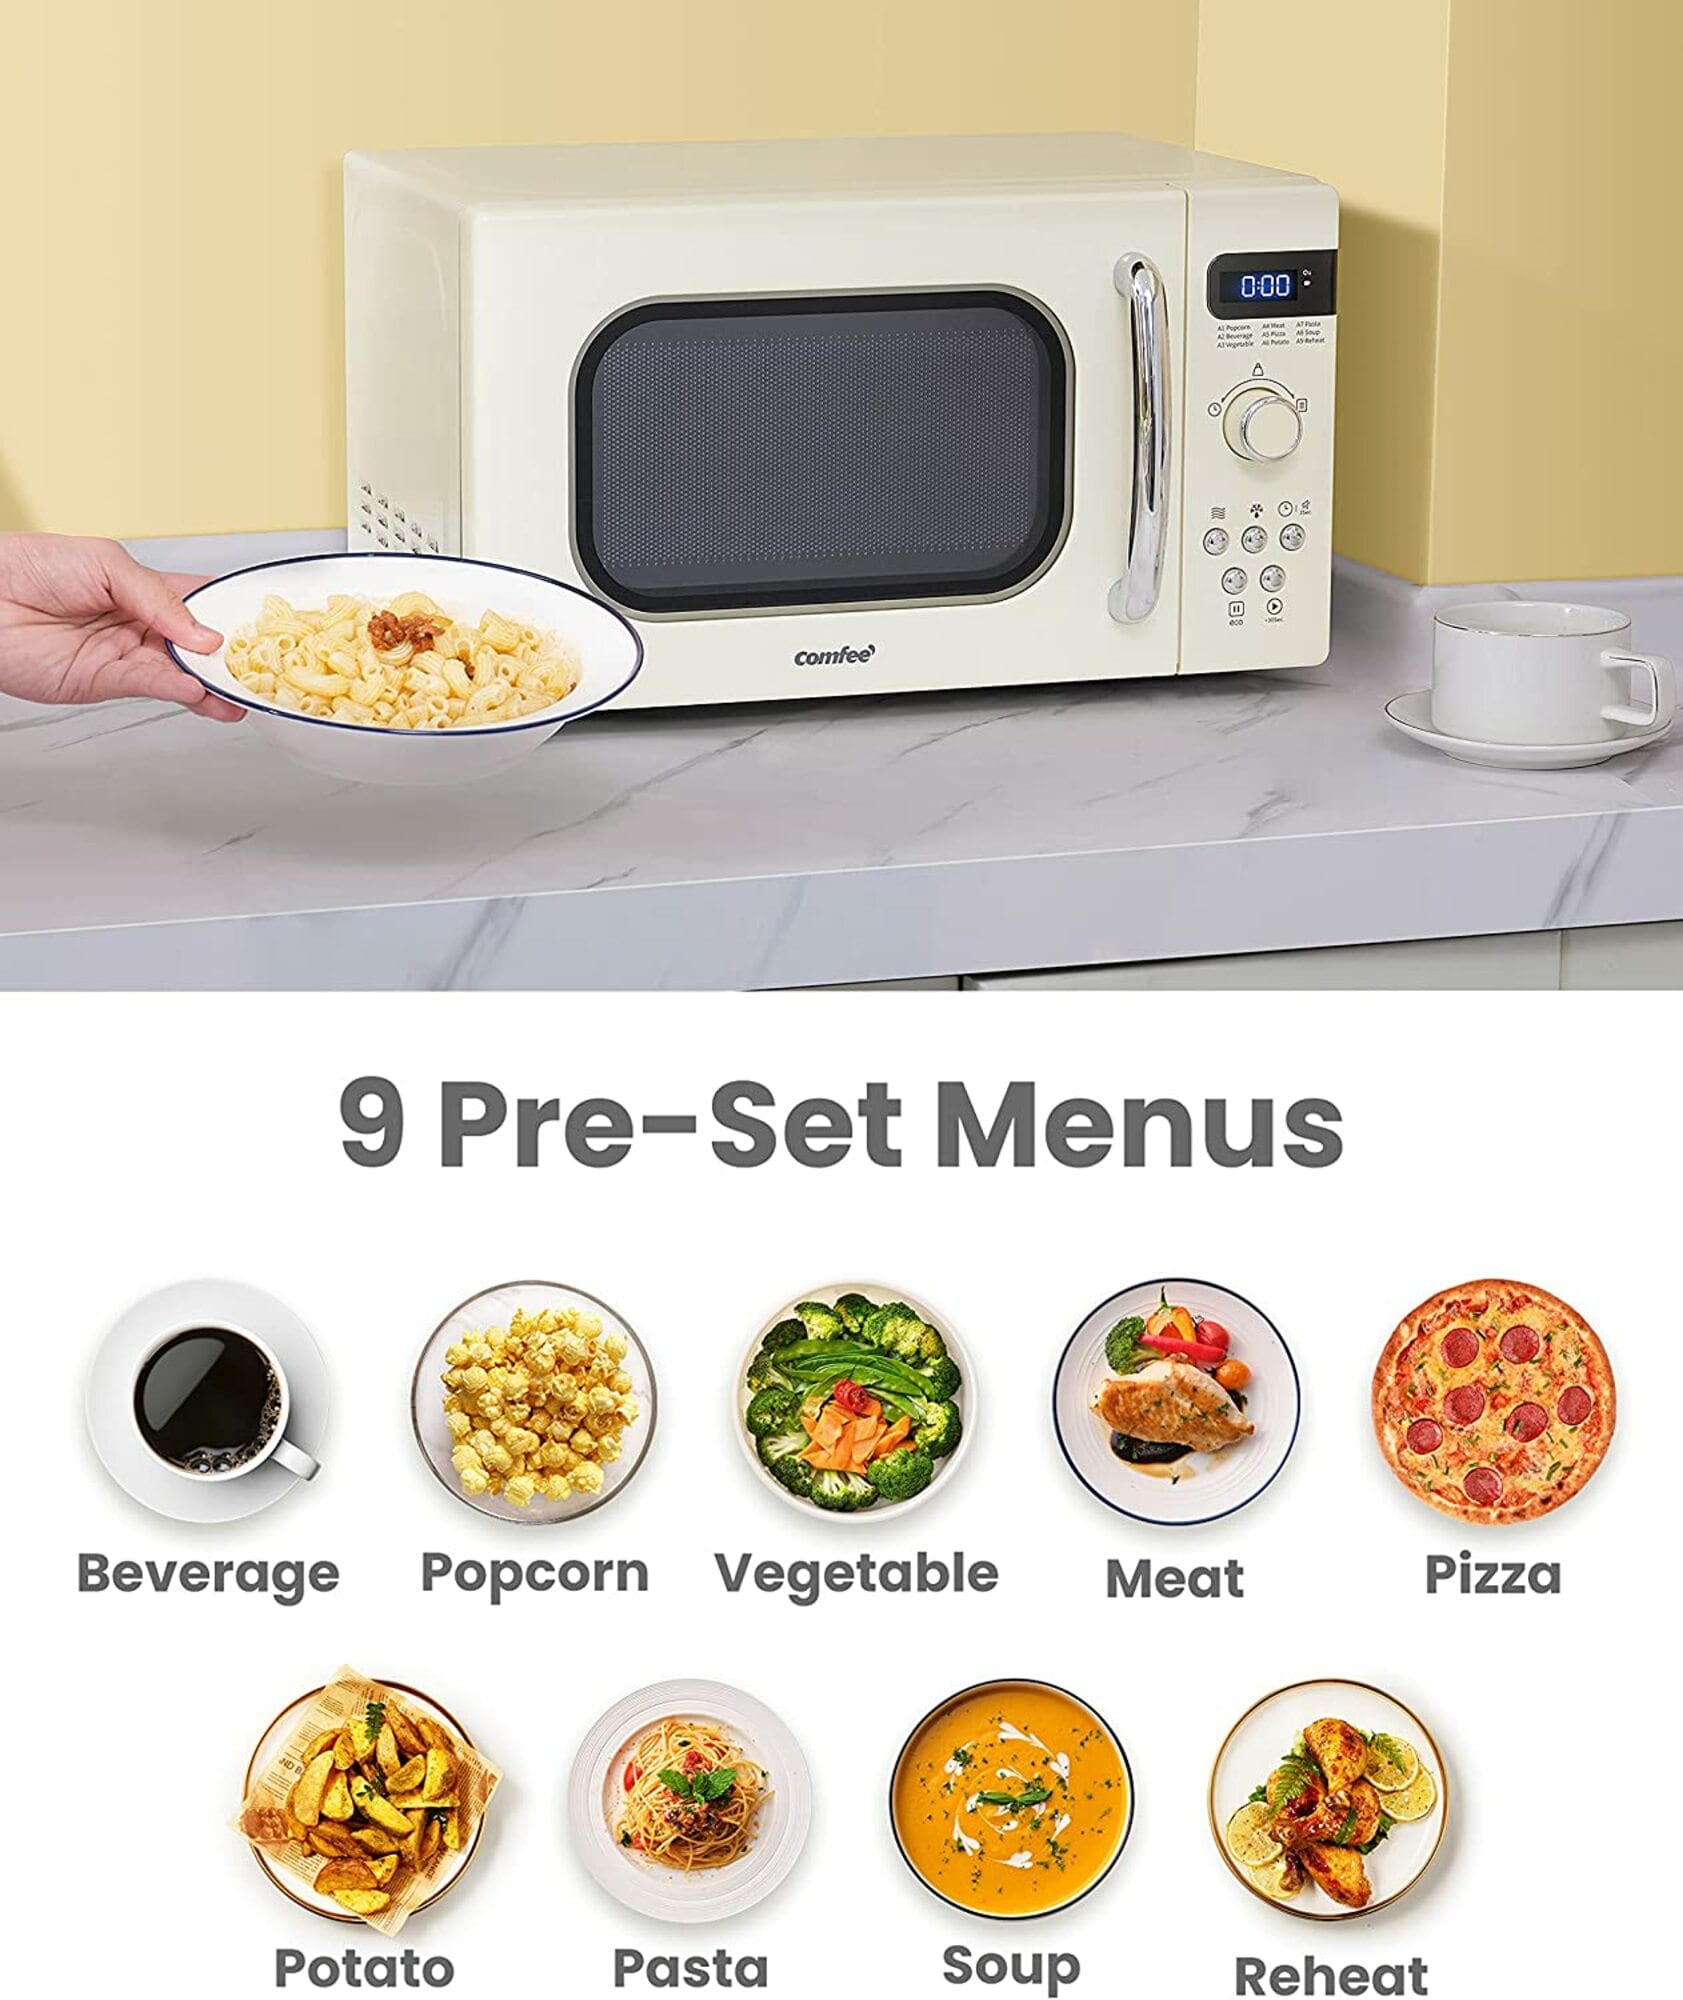 Comfee Microwave - Top Choice